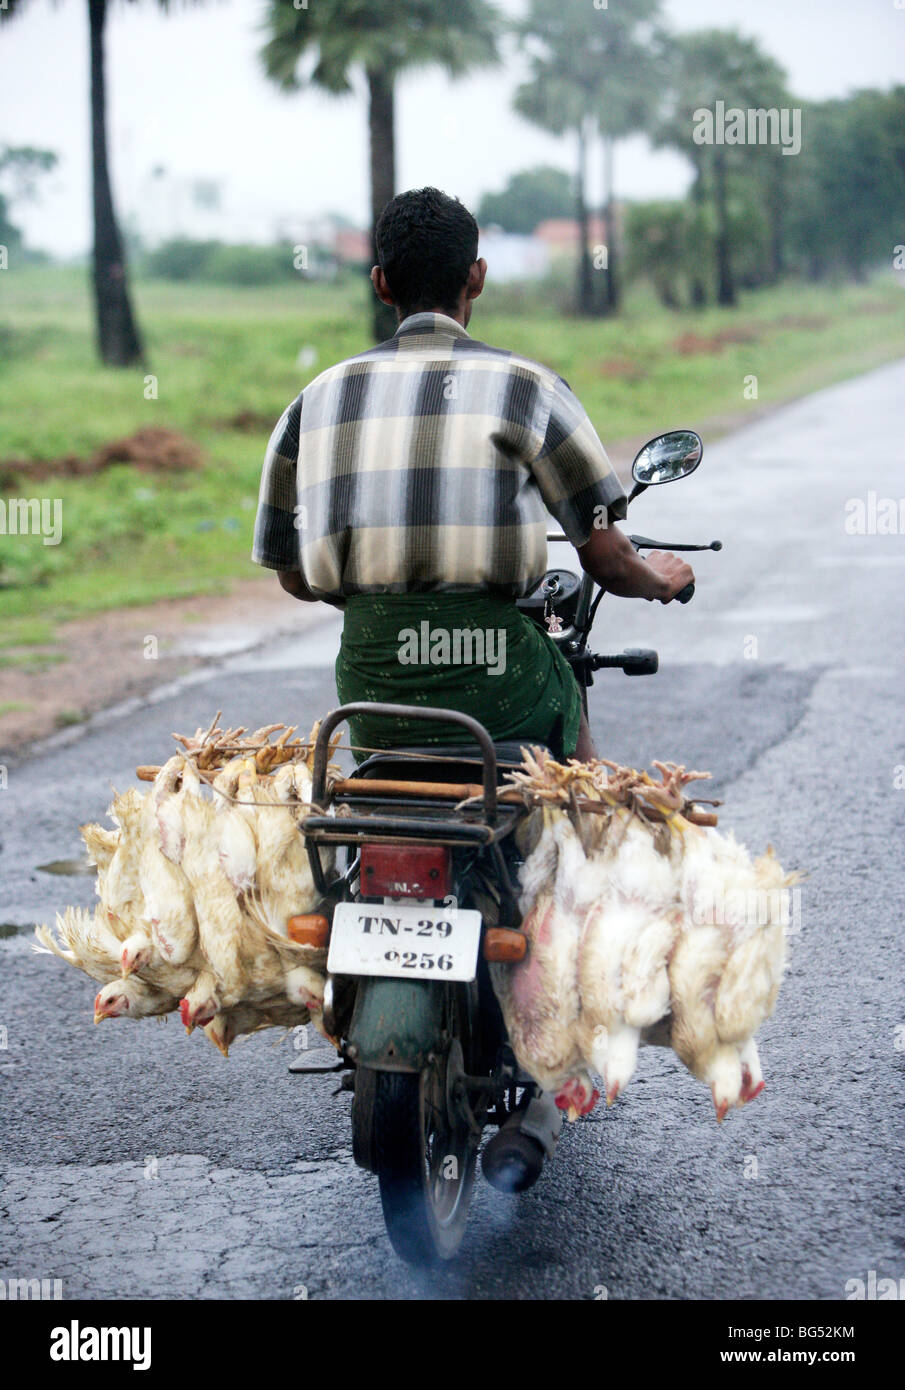 Poulet vivant accrocher sur un motocycle, Tamil Nadu, Inde Banque D'Images